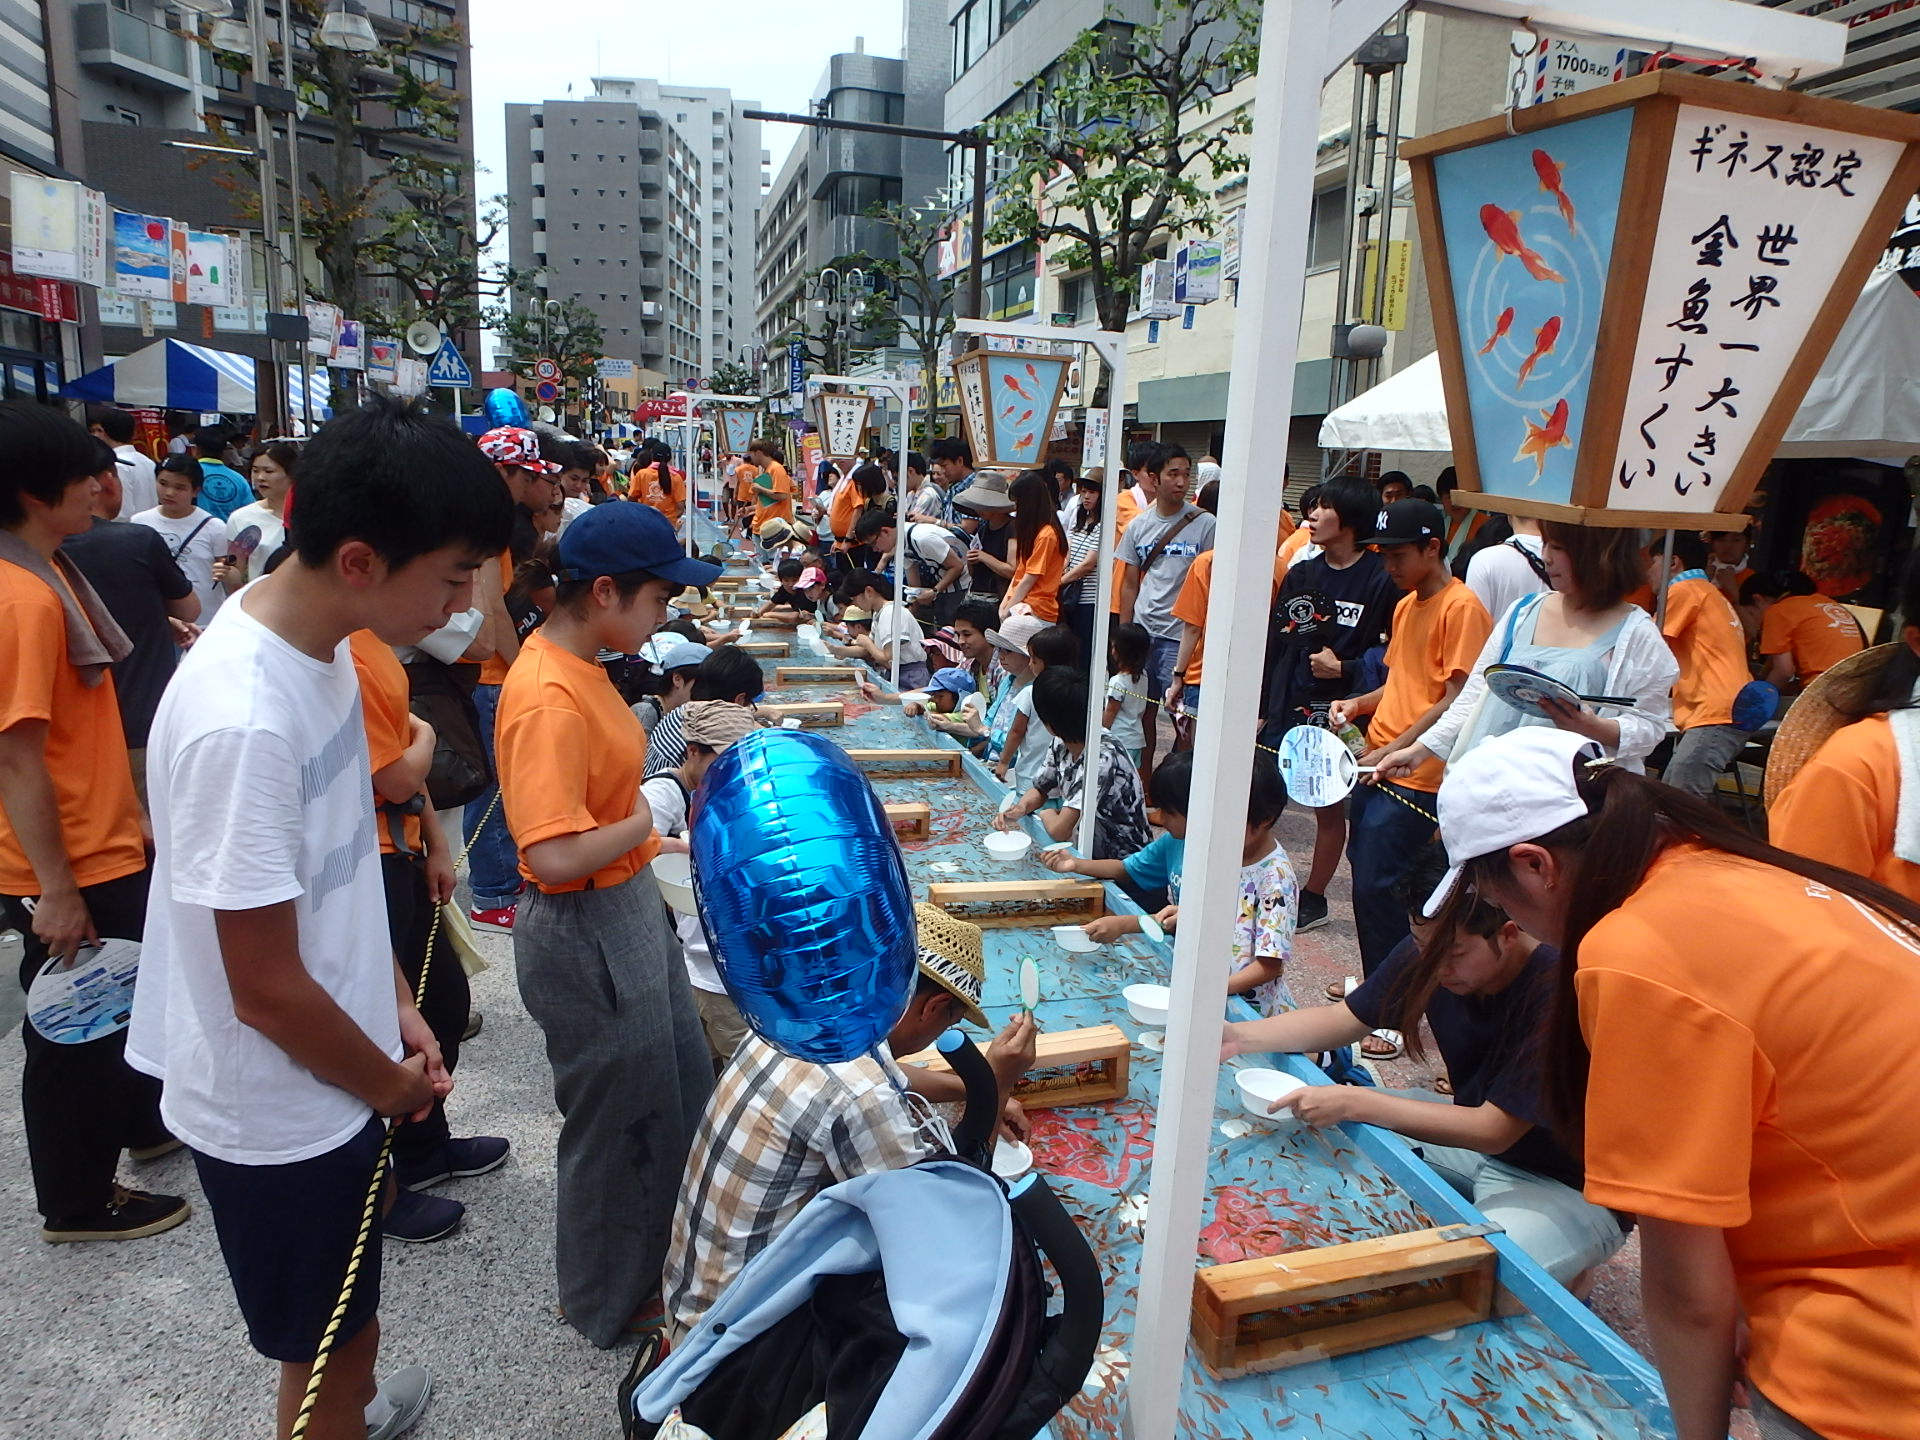 ギネス認定 世界一大きい金魚すくい 横浜 湘南 横須賀不動産 賃貸 ウスイホーム